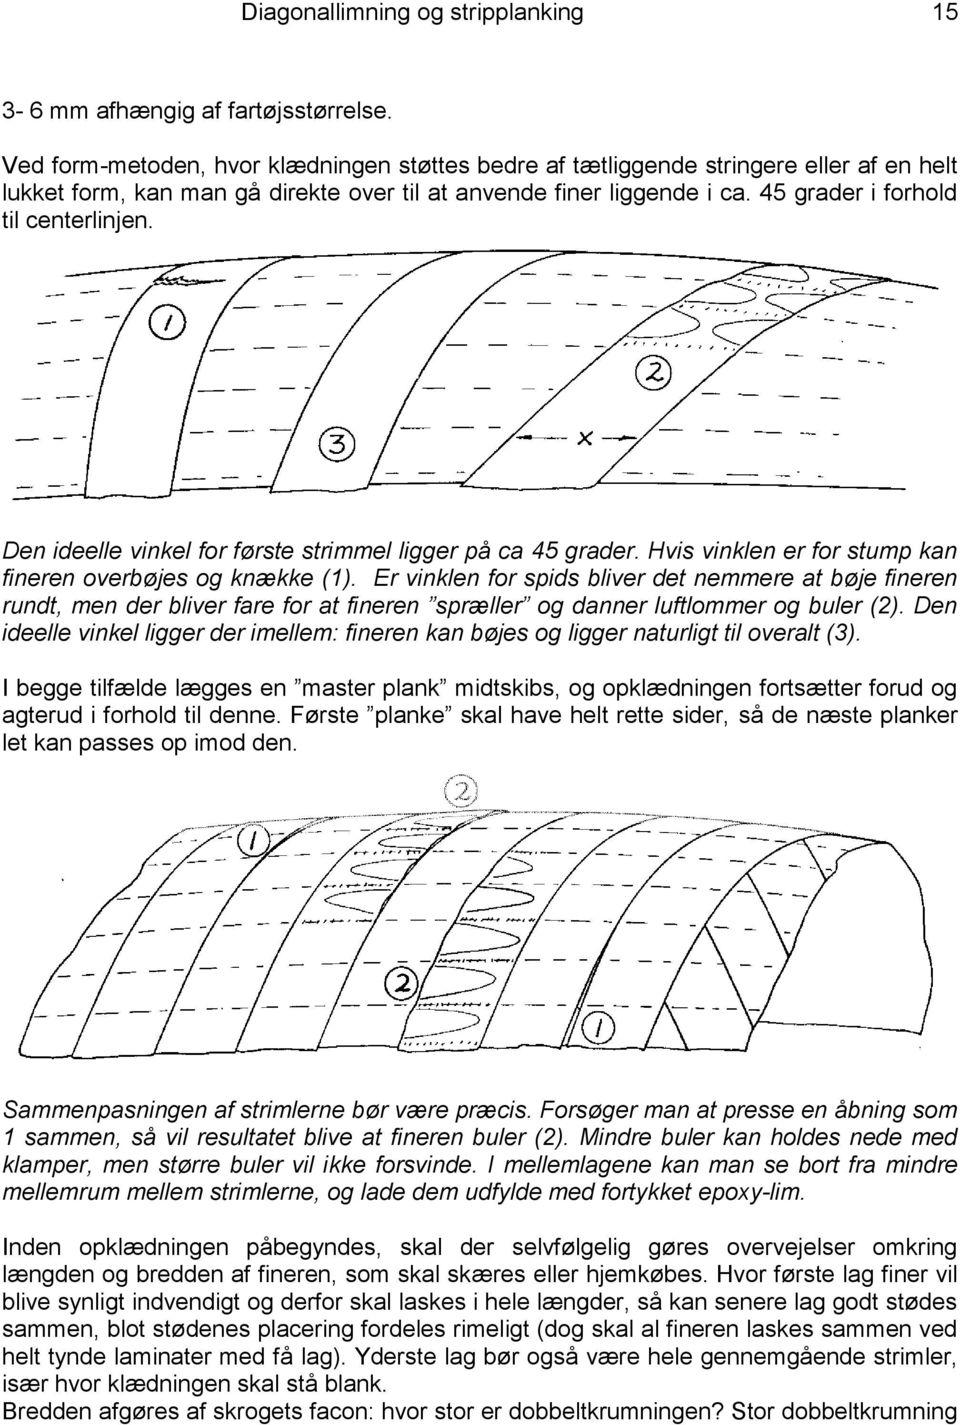 AMU efteruddannelse. Kompendium. Diagonallimning og strip planking af både  - PDF Free Download